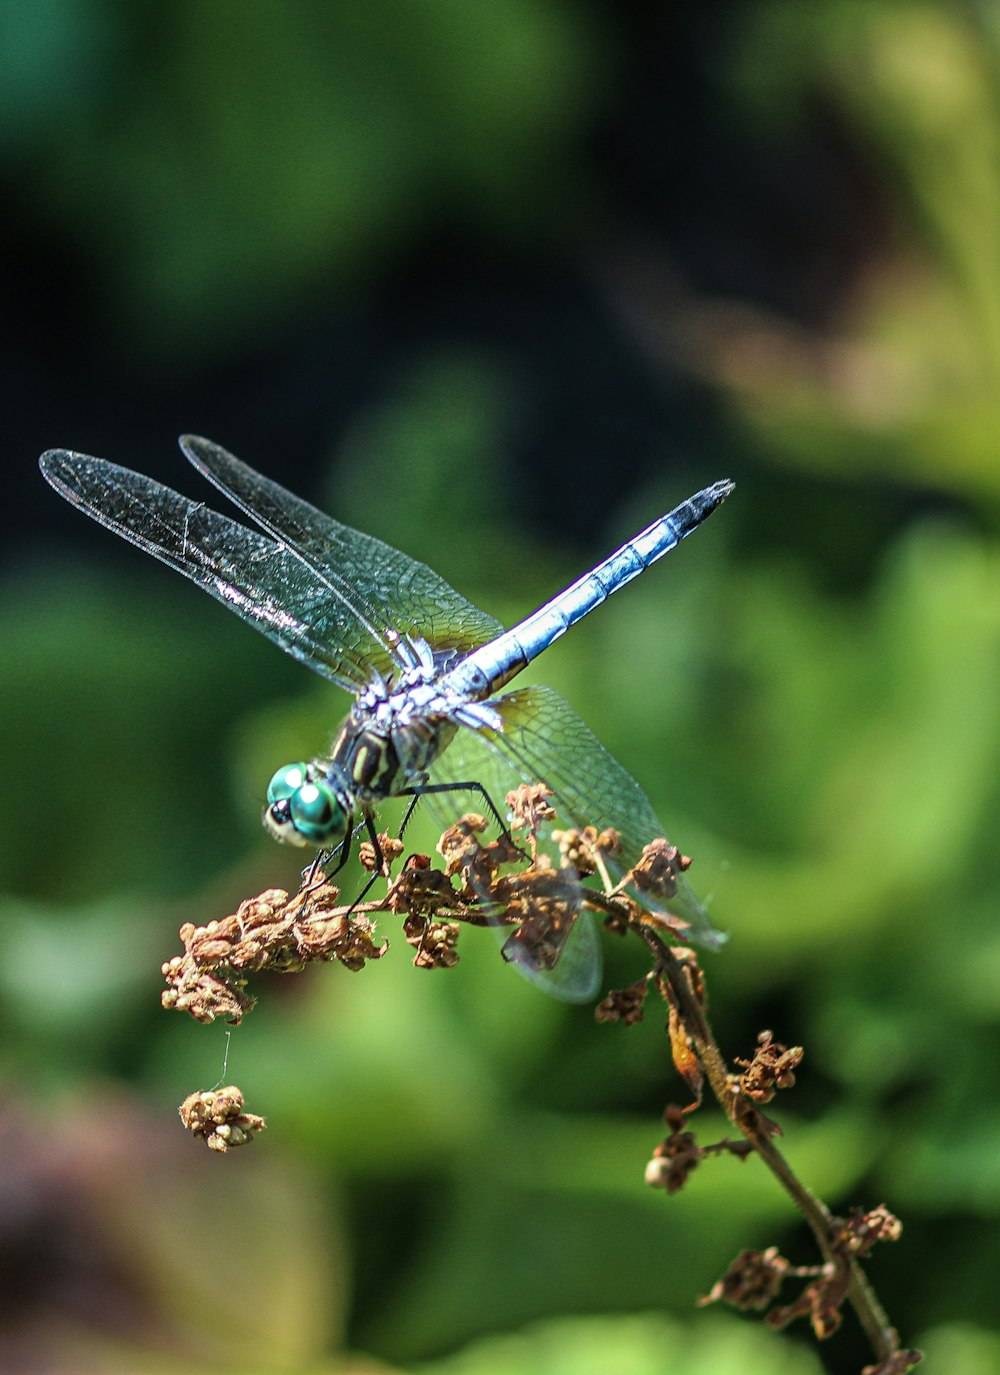 libellula blu e bianca appollaiata sul gambo della pianta marrone in primo piano fotografia durante il giorno